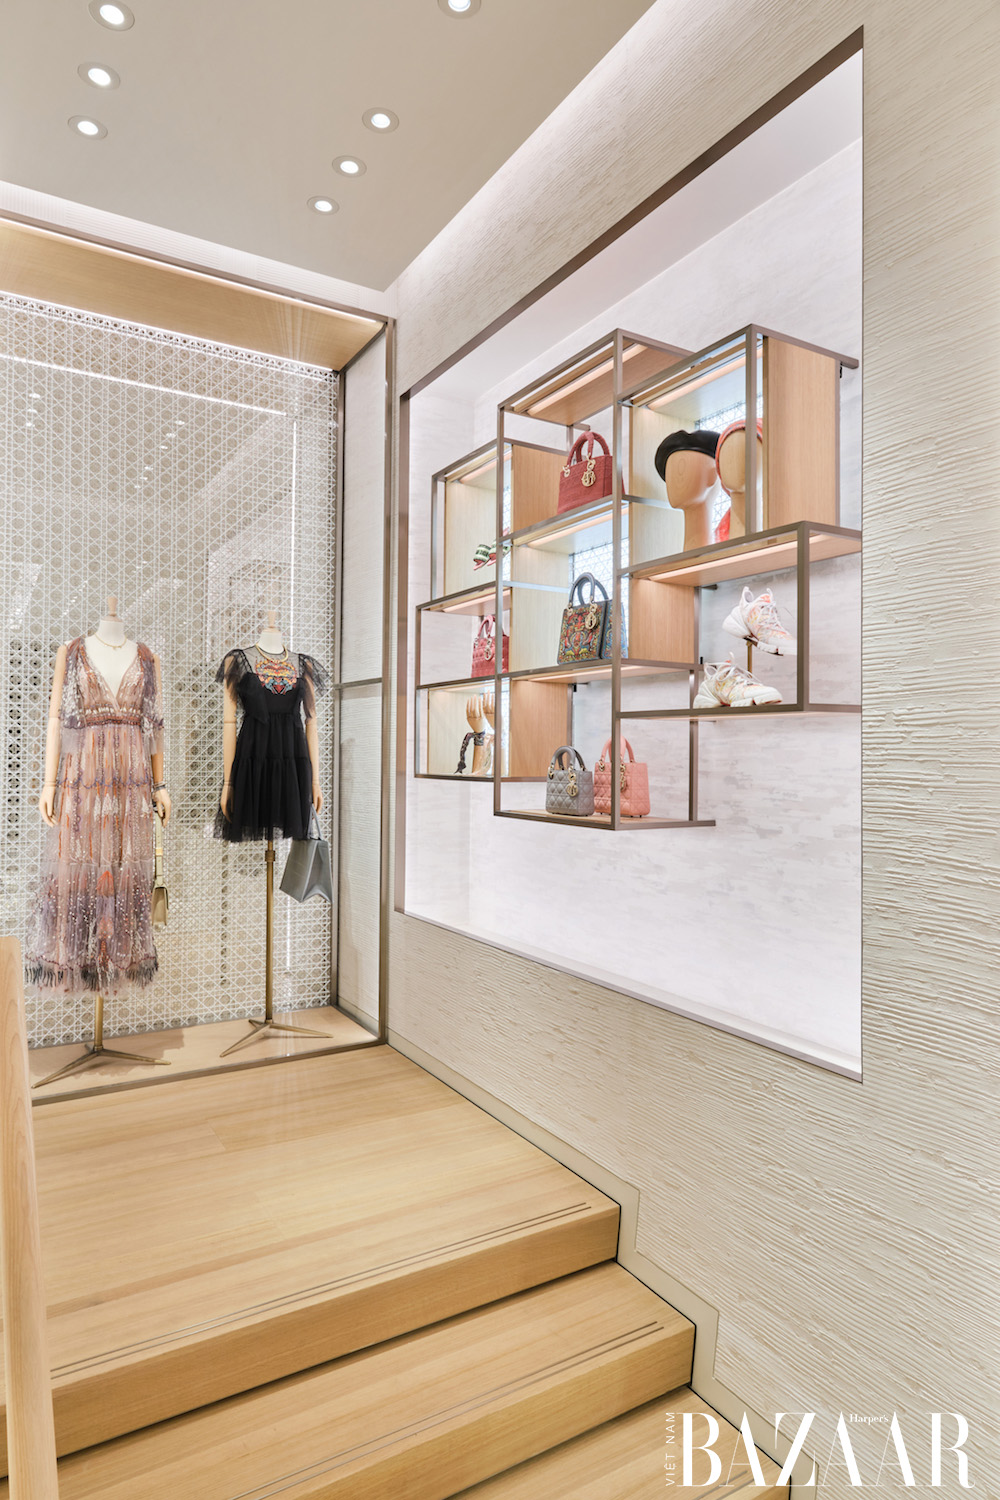 Christian Dior khai trương cửa hàng Hà Nội mới tại Hanoi International Centre Boutique